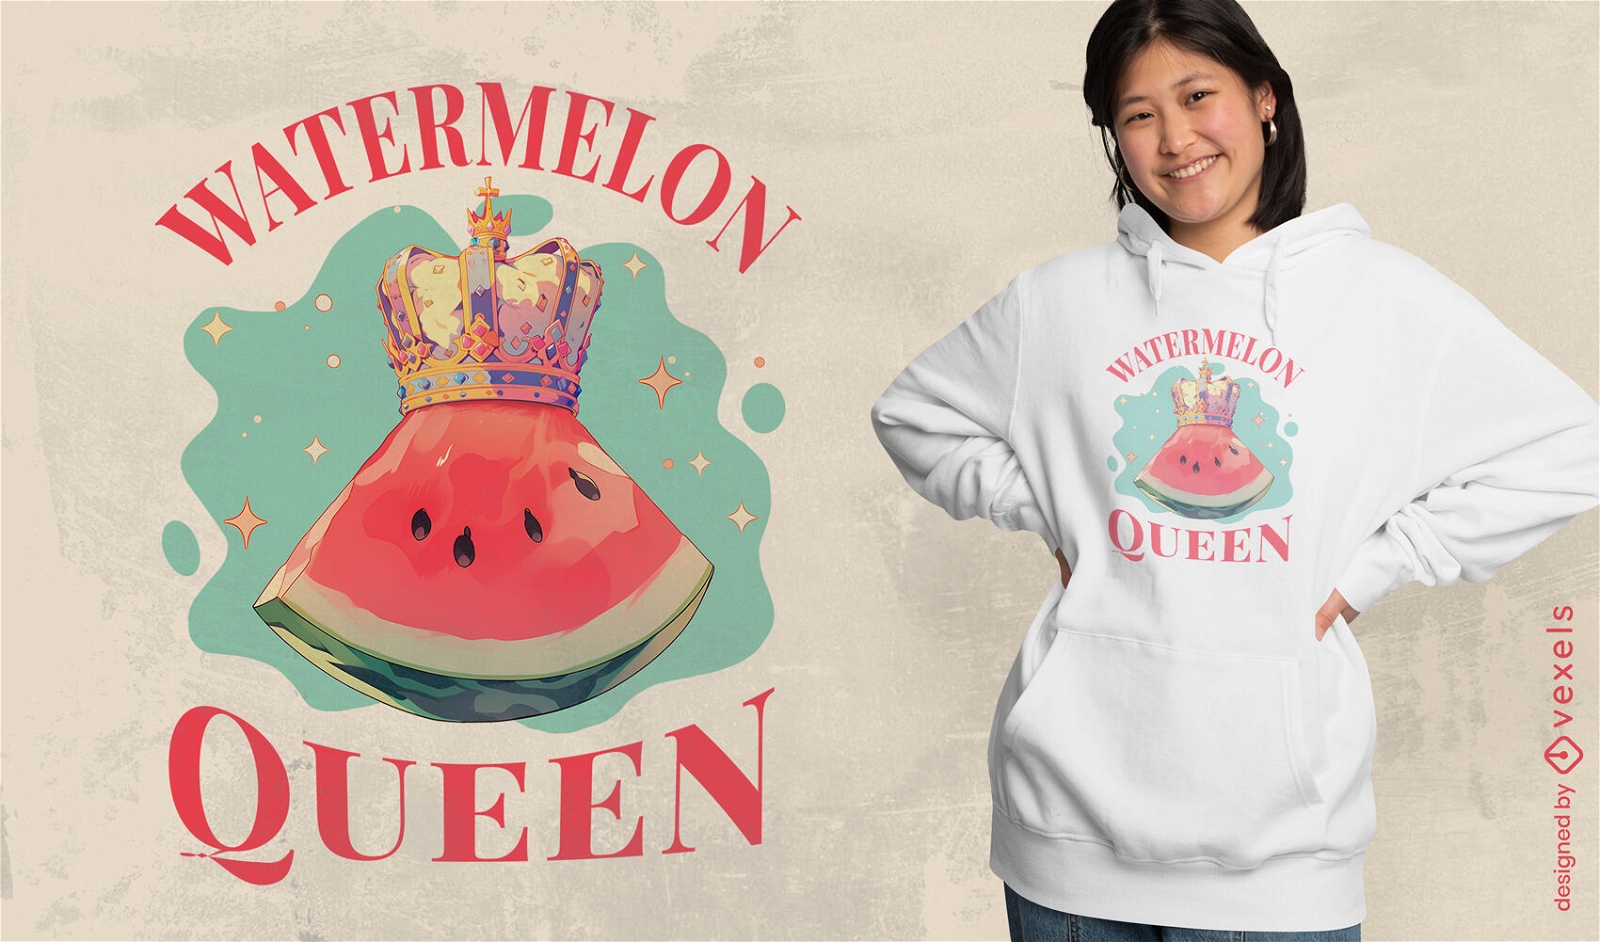 Dise?o de camiseta Watermelon Queen.